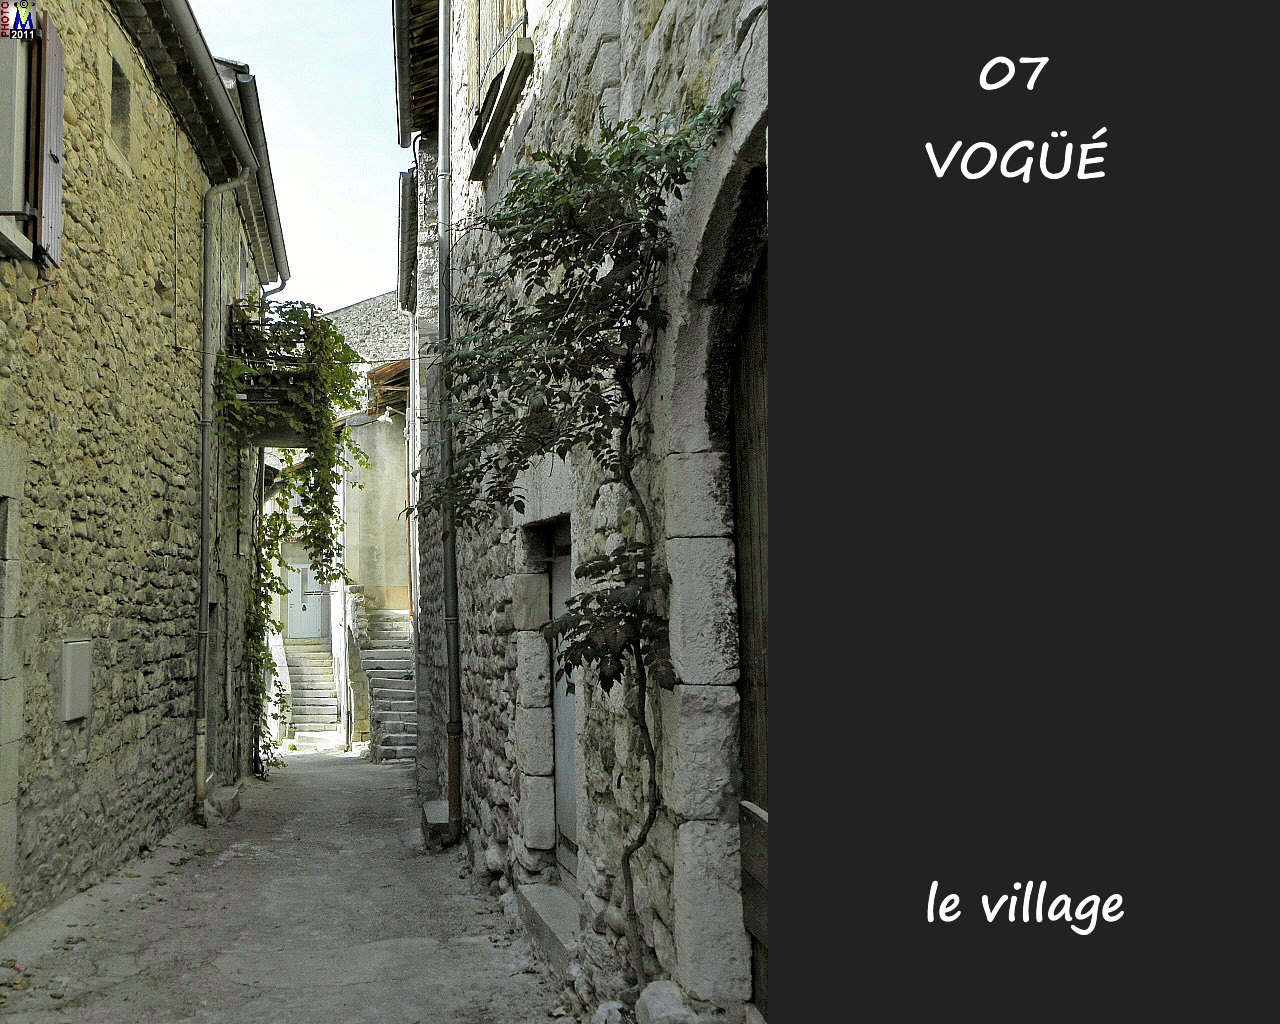 07VOGUE_village_138.jpg